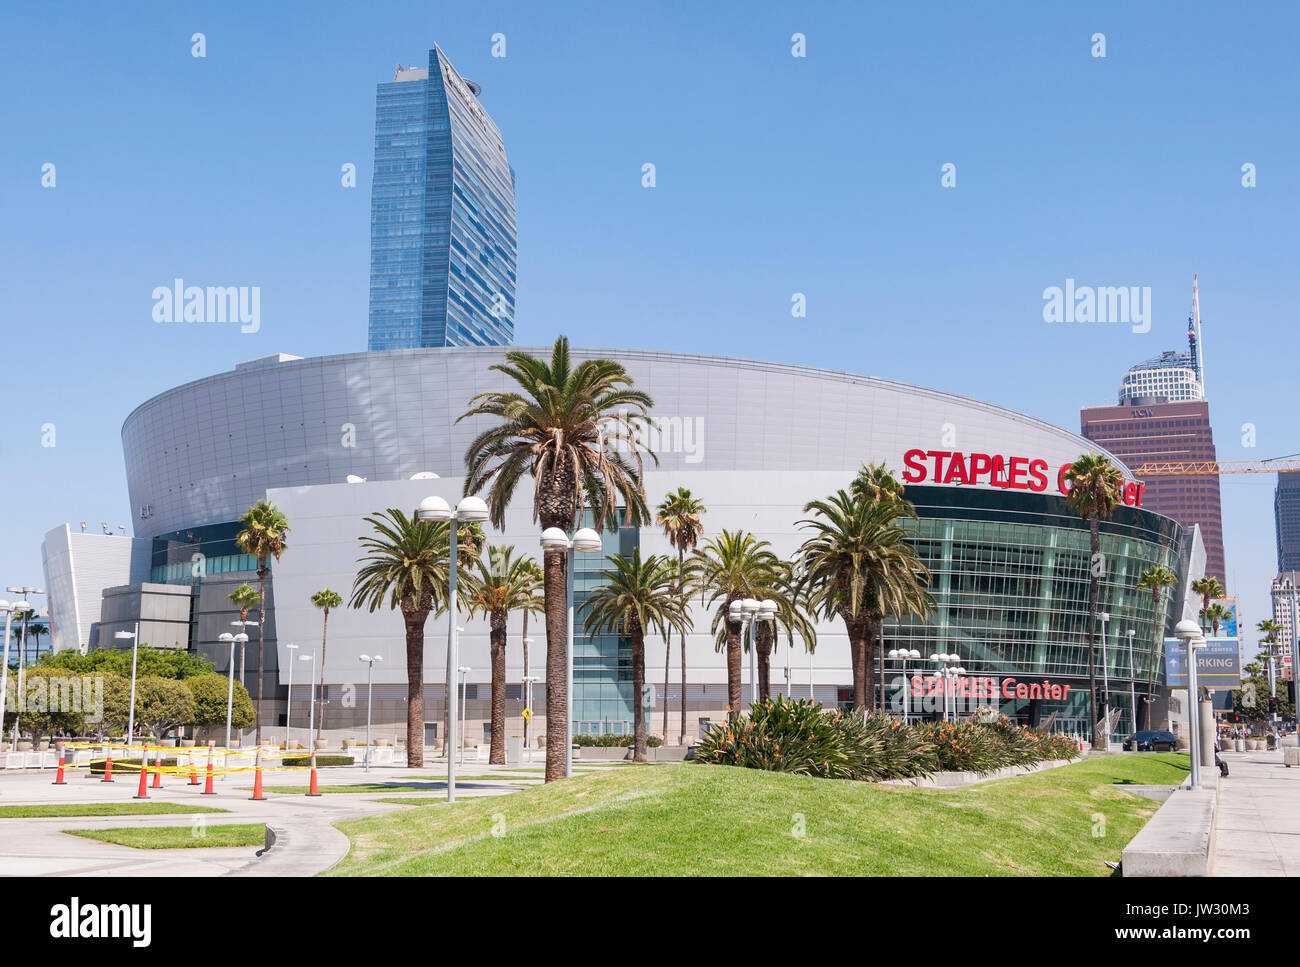 03 de septiembre de 2016. Los Angeles - Estados Unidos de América. Famoso Staples Center es un multi-propósito sports arena en el centro de Los Angeles. Foto de stock